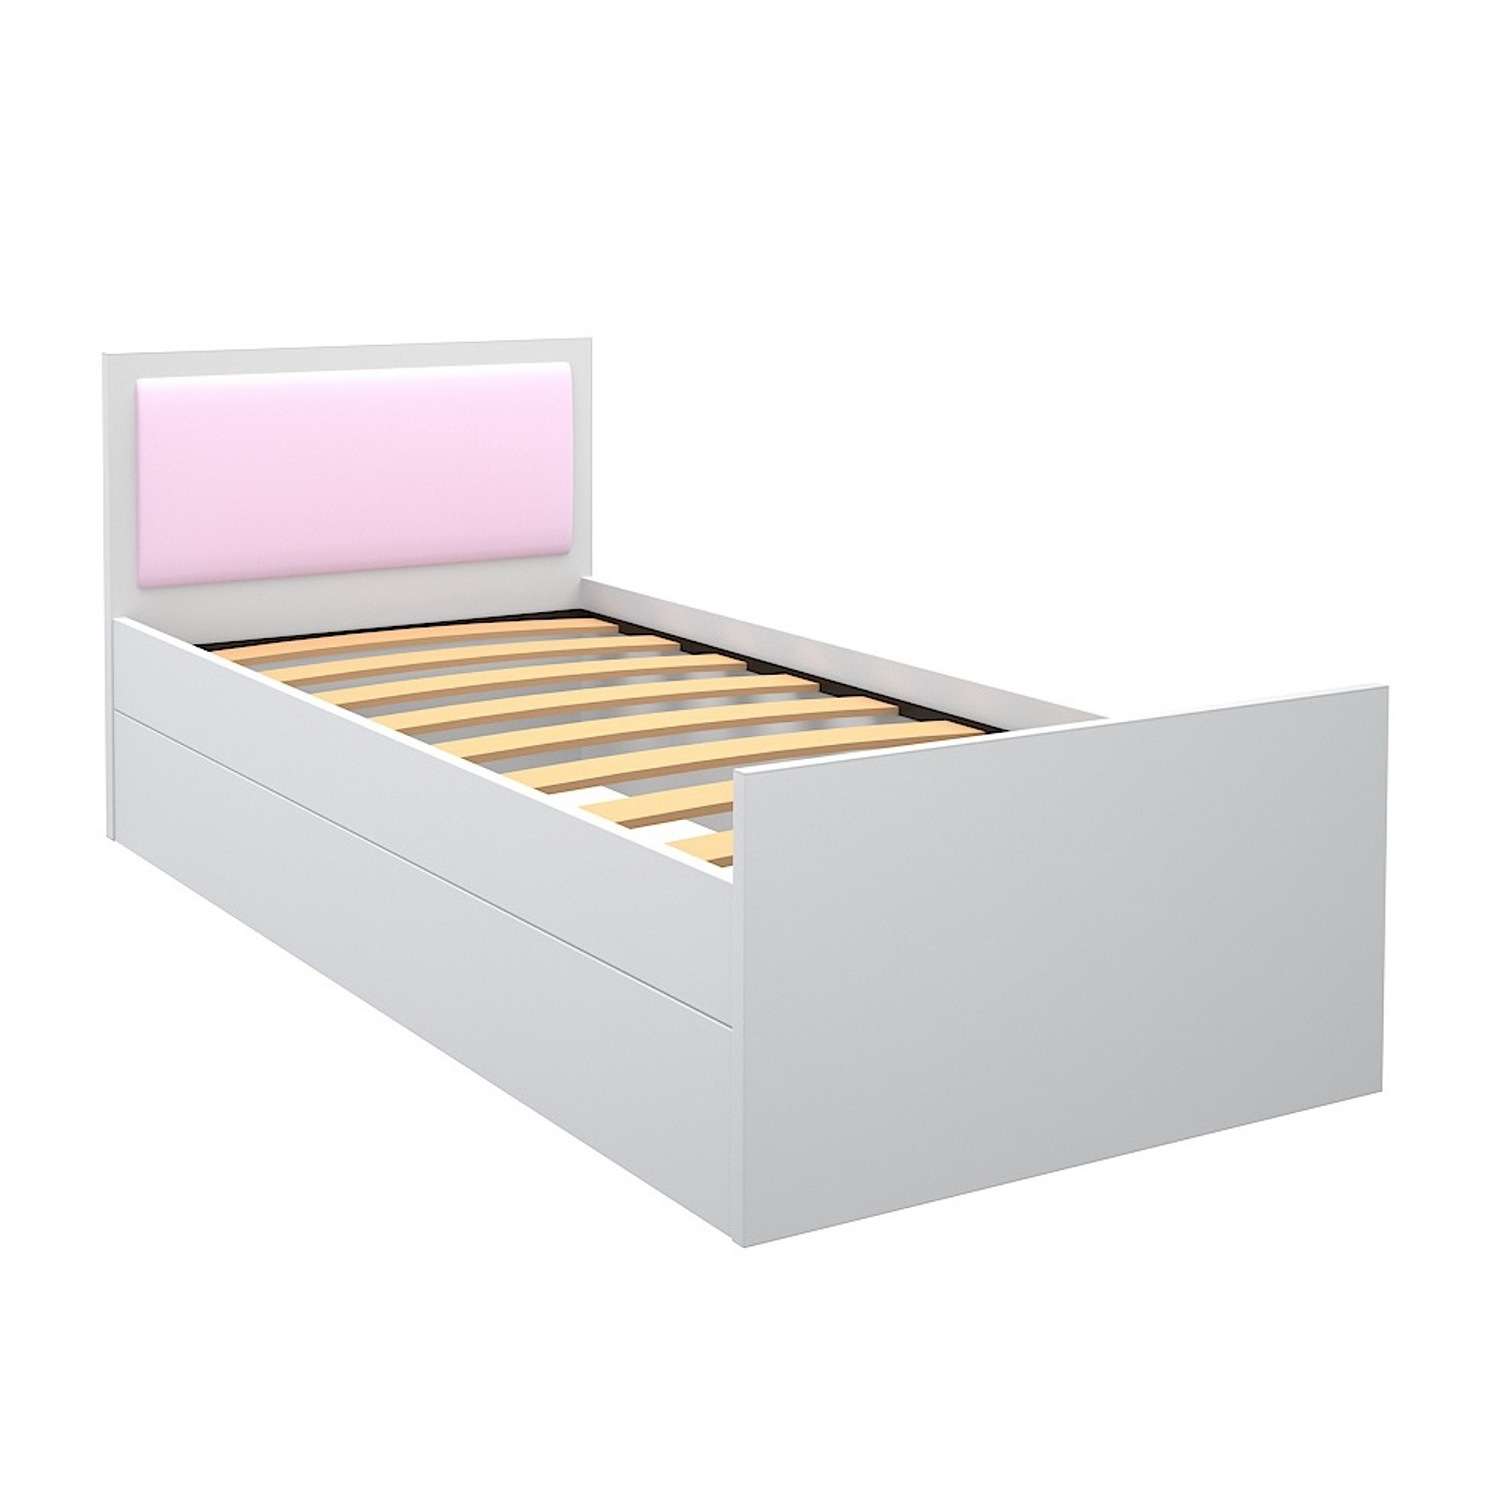 Кровать подростковая Феникс с мягким изголовьем Светло-розовый - фото 1